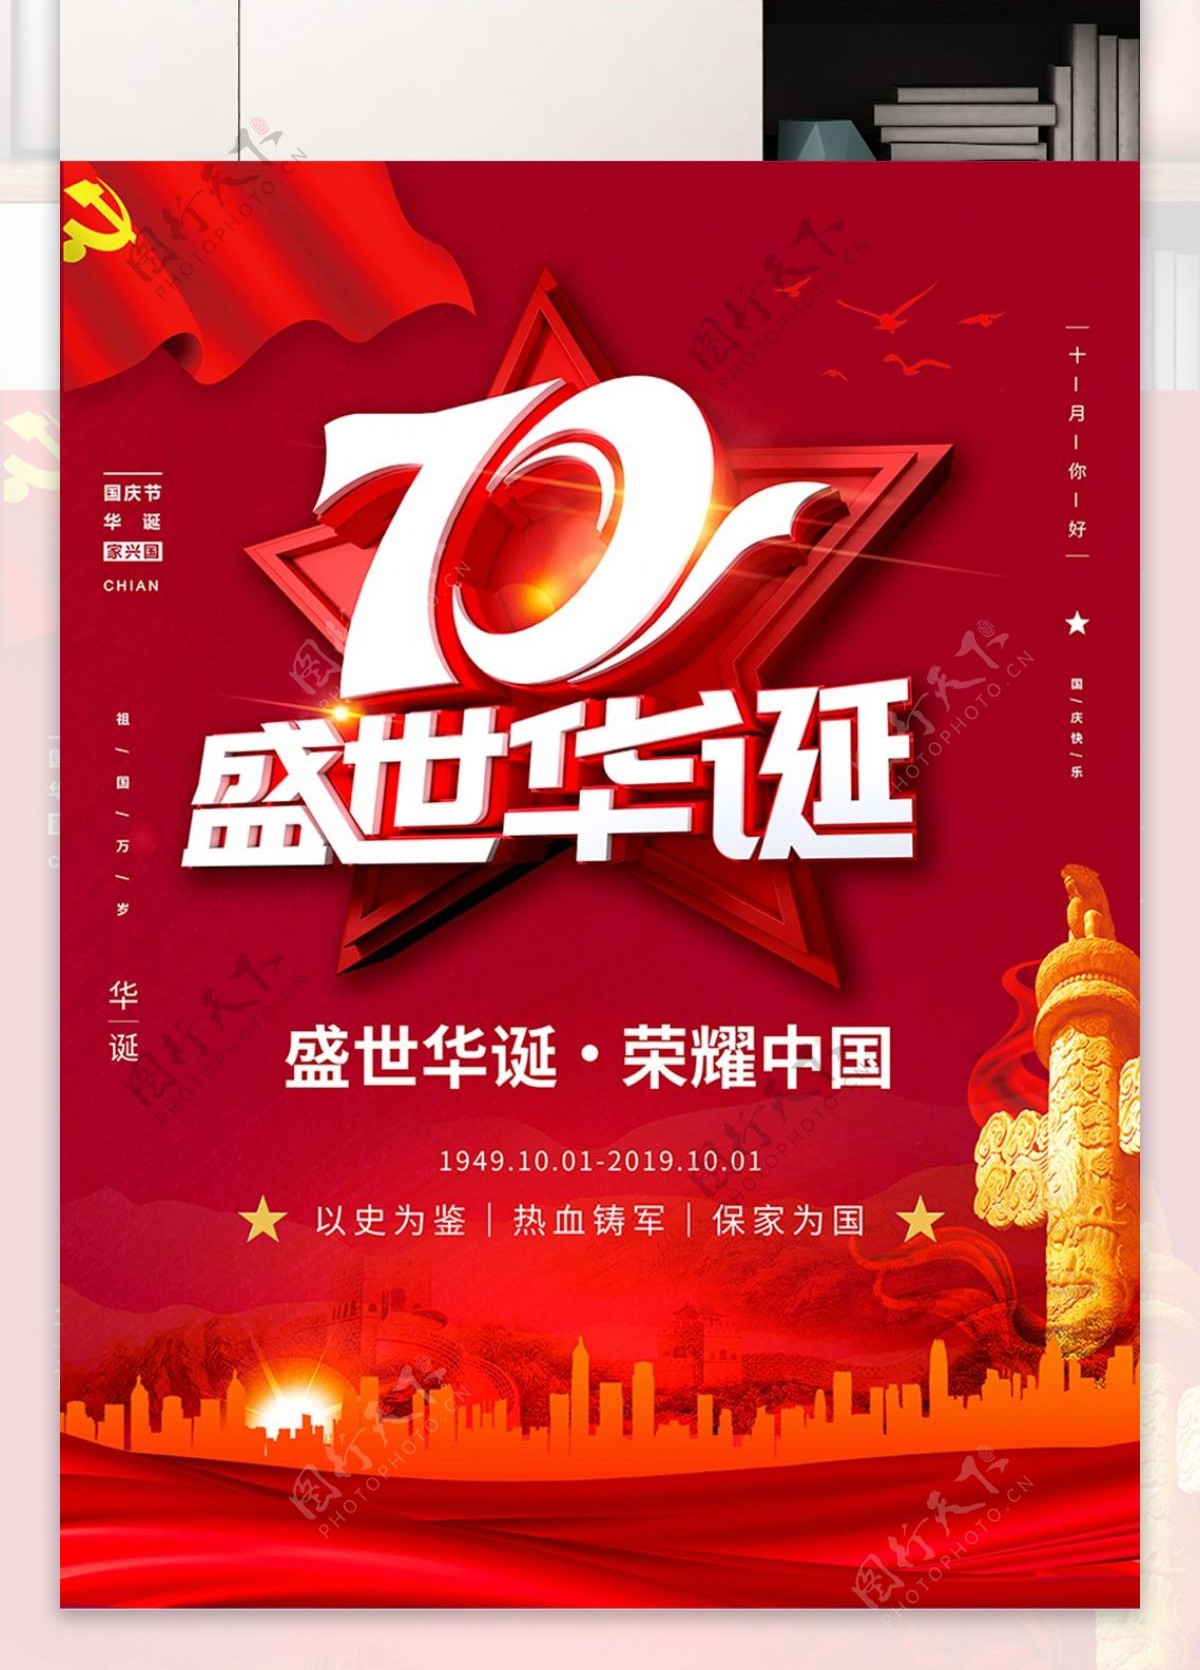 红色喜庆国庆节海报设计